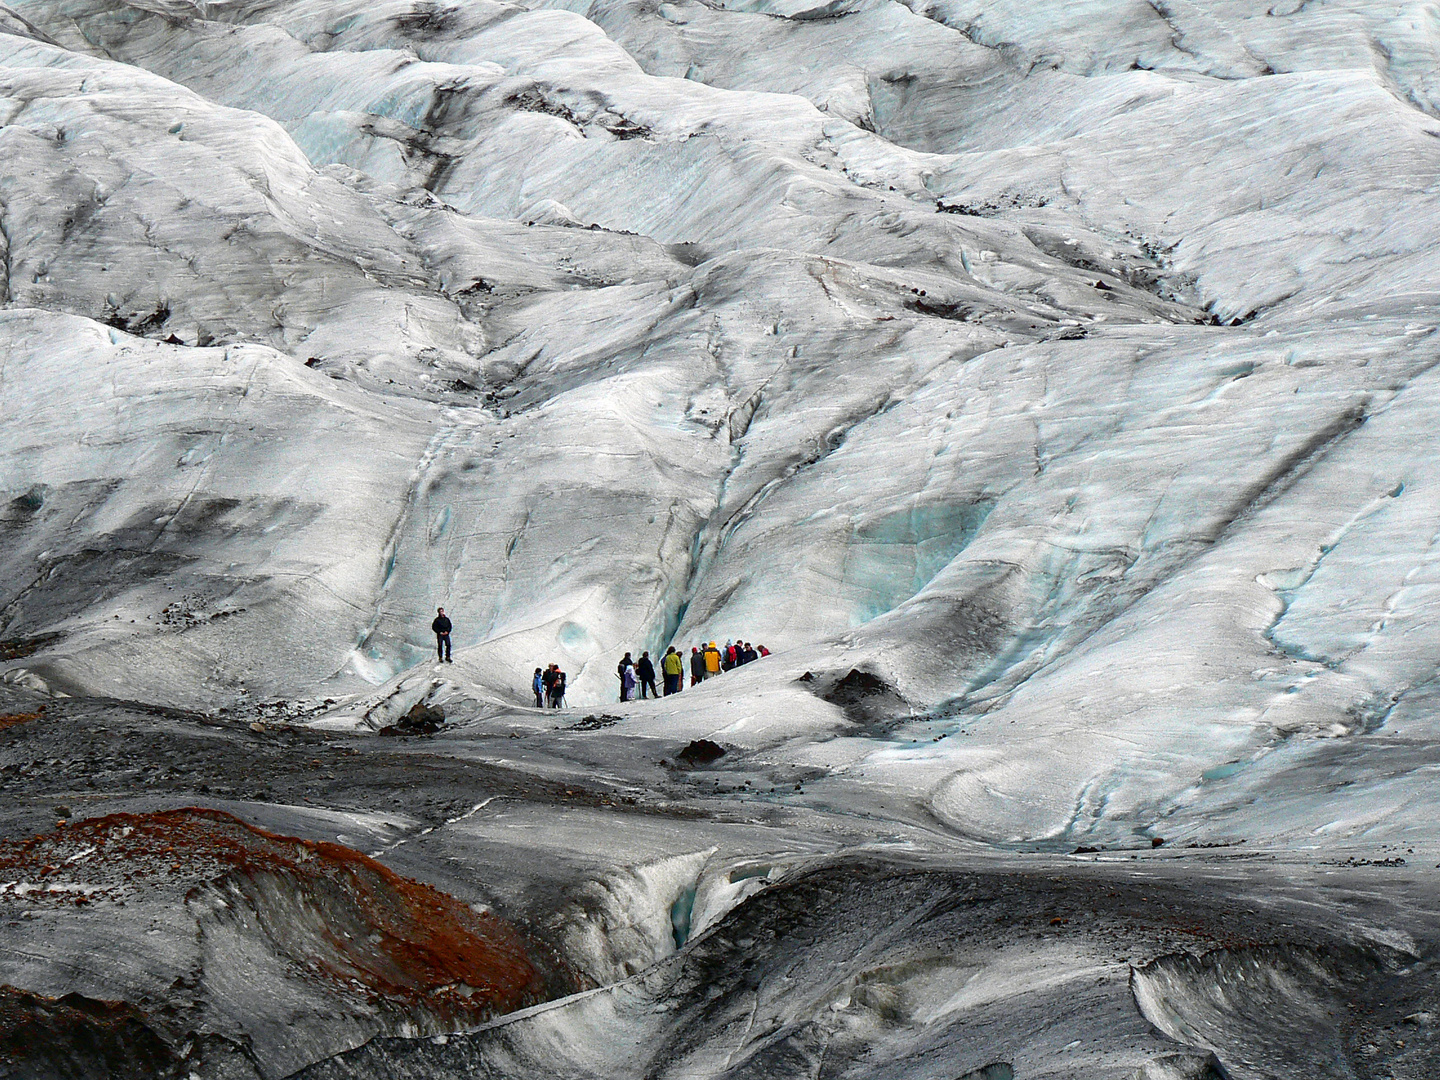 Gletscherwanderung